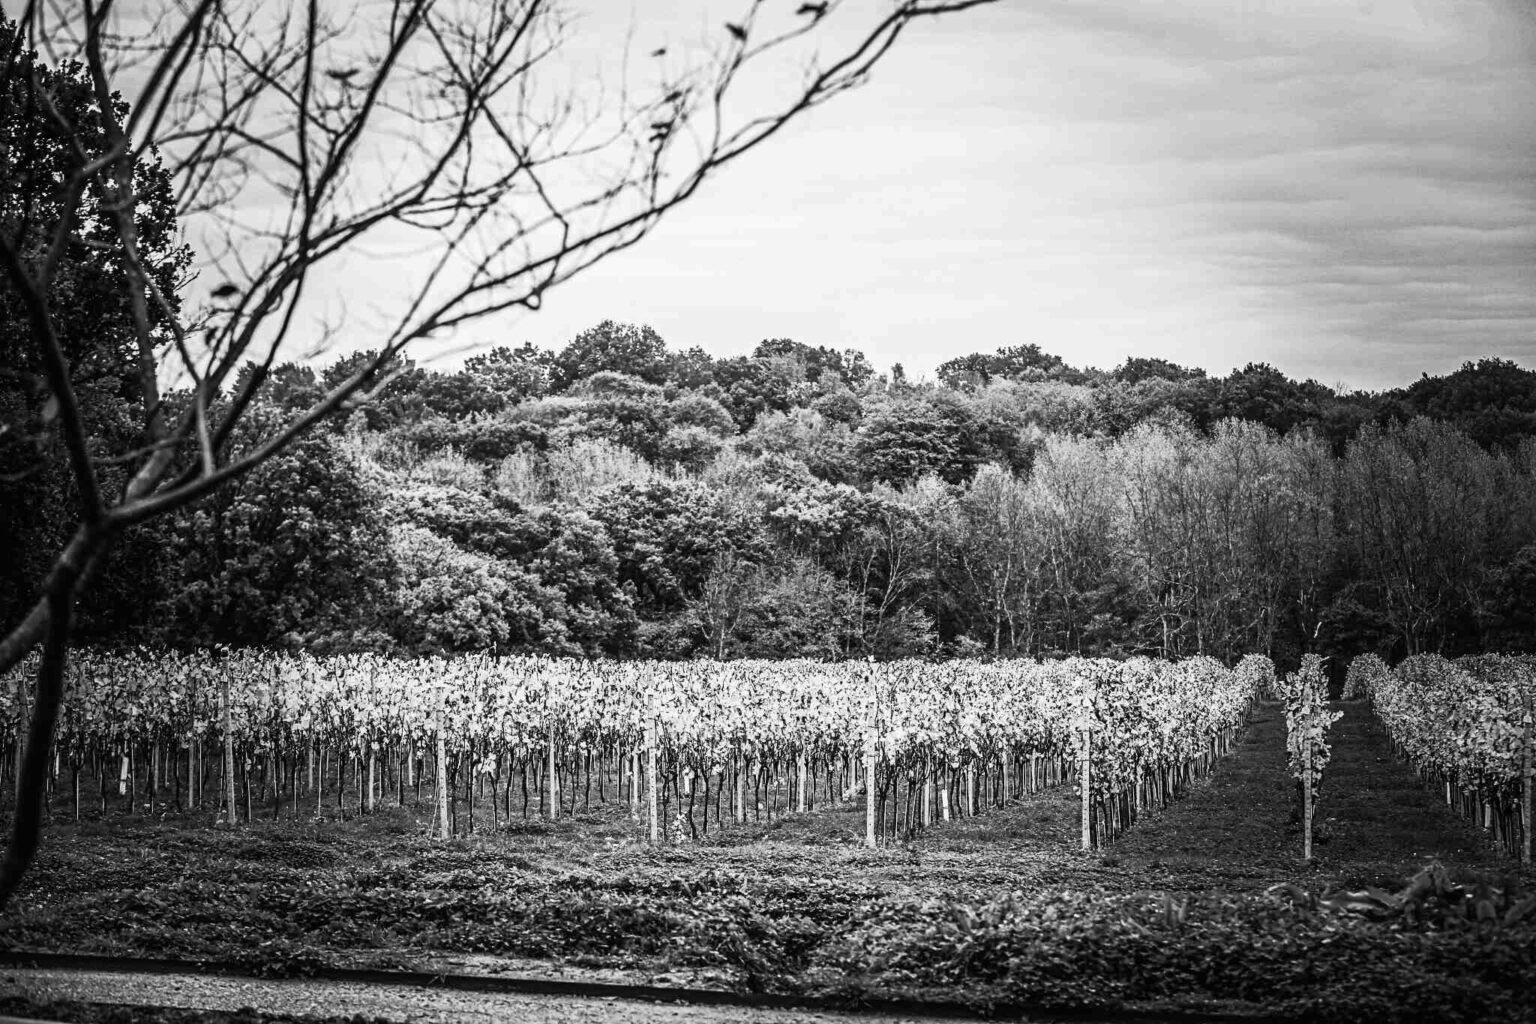 english vineyard and english countryside